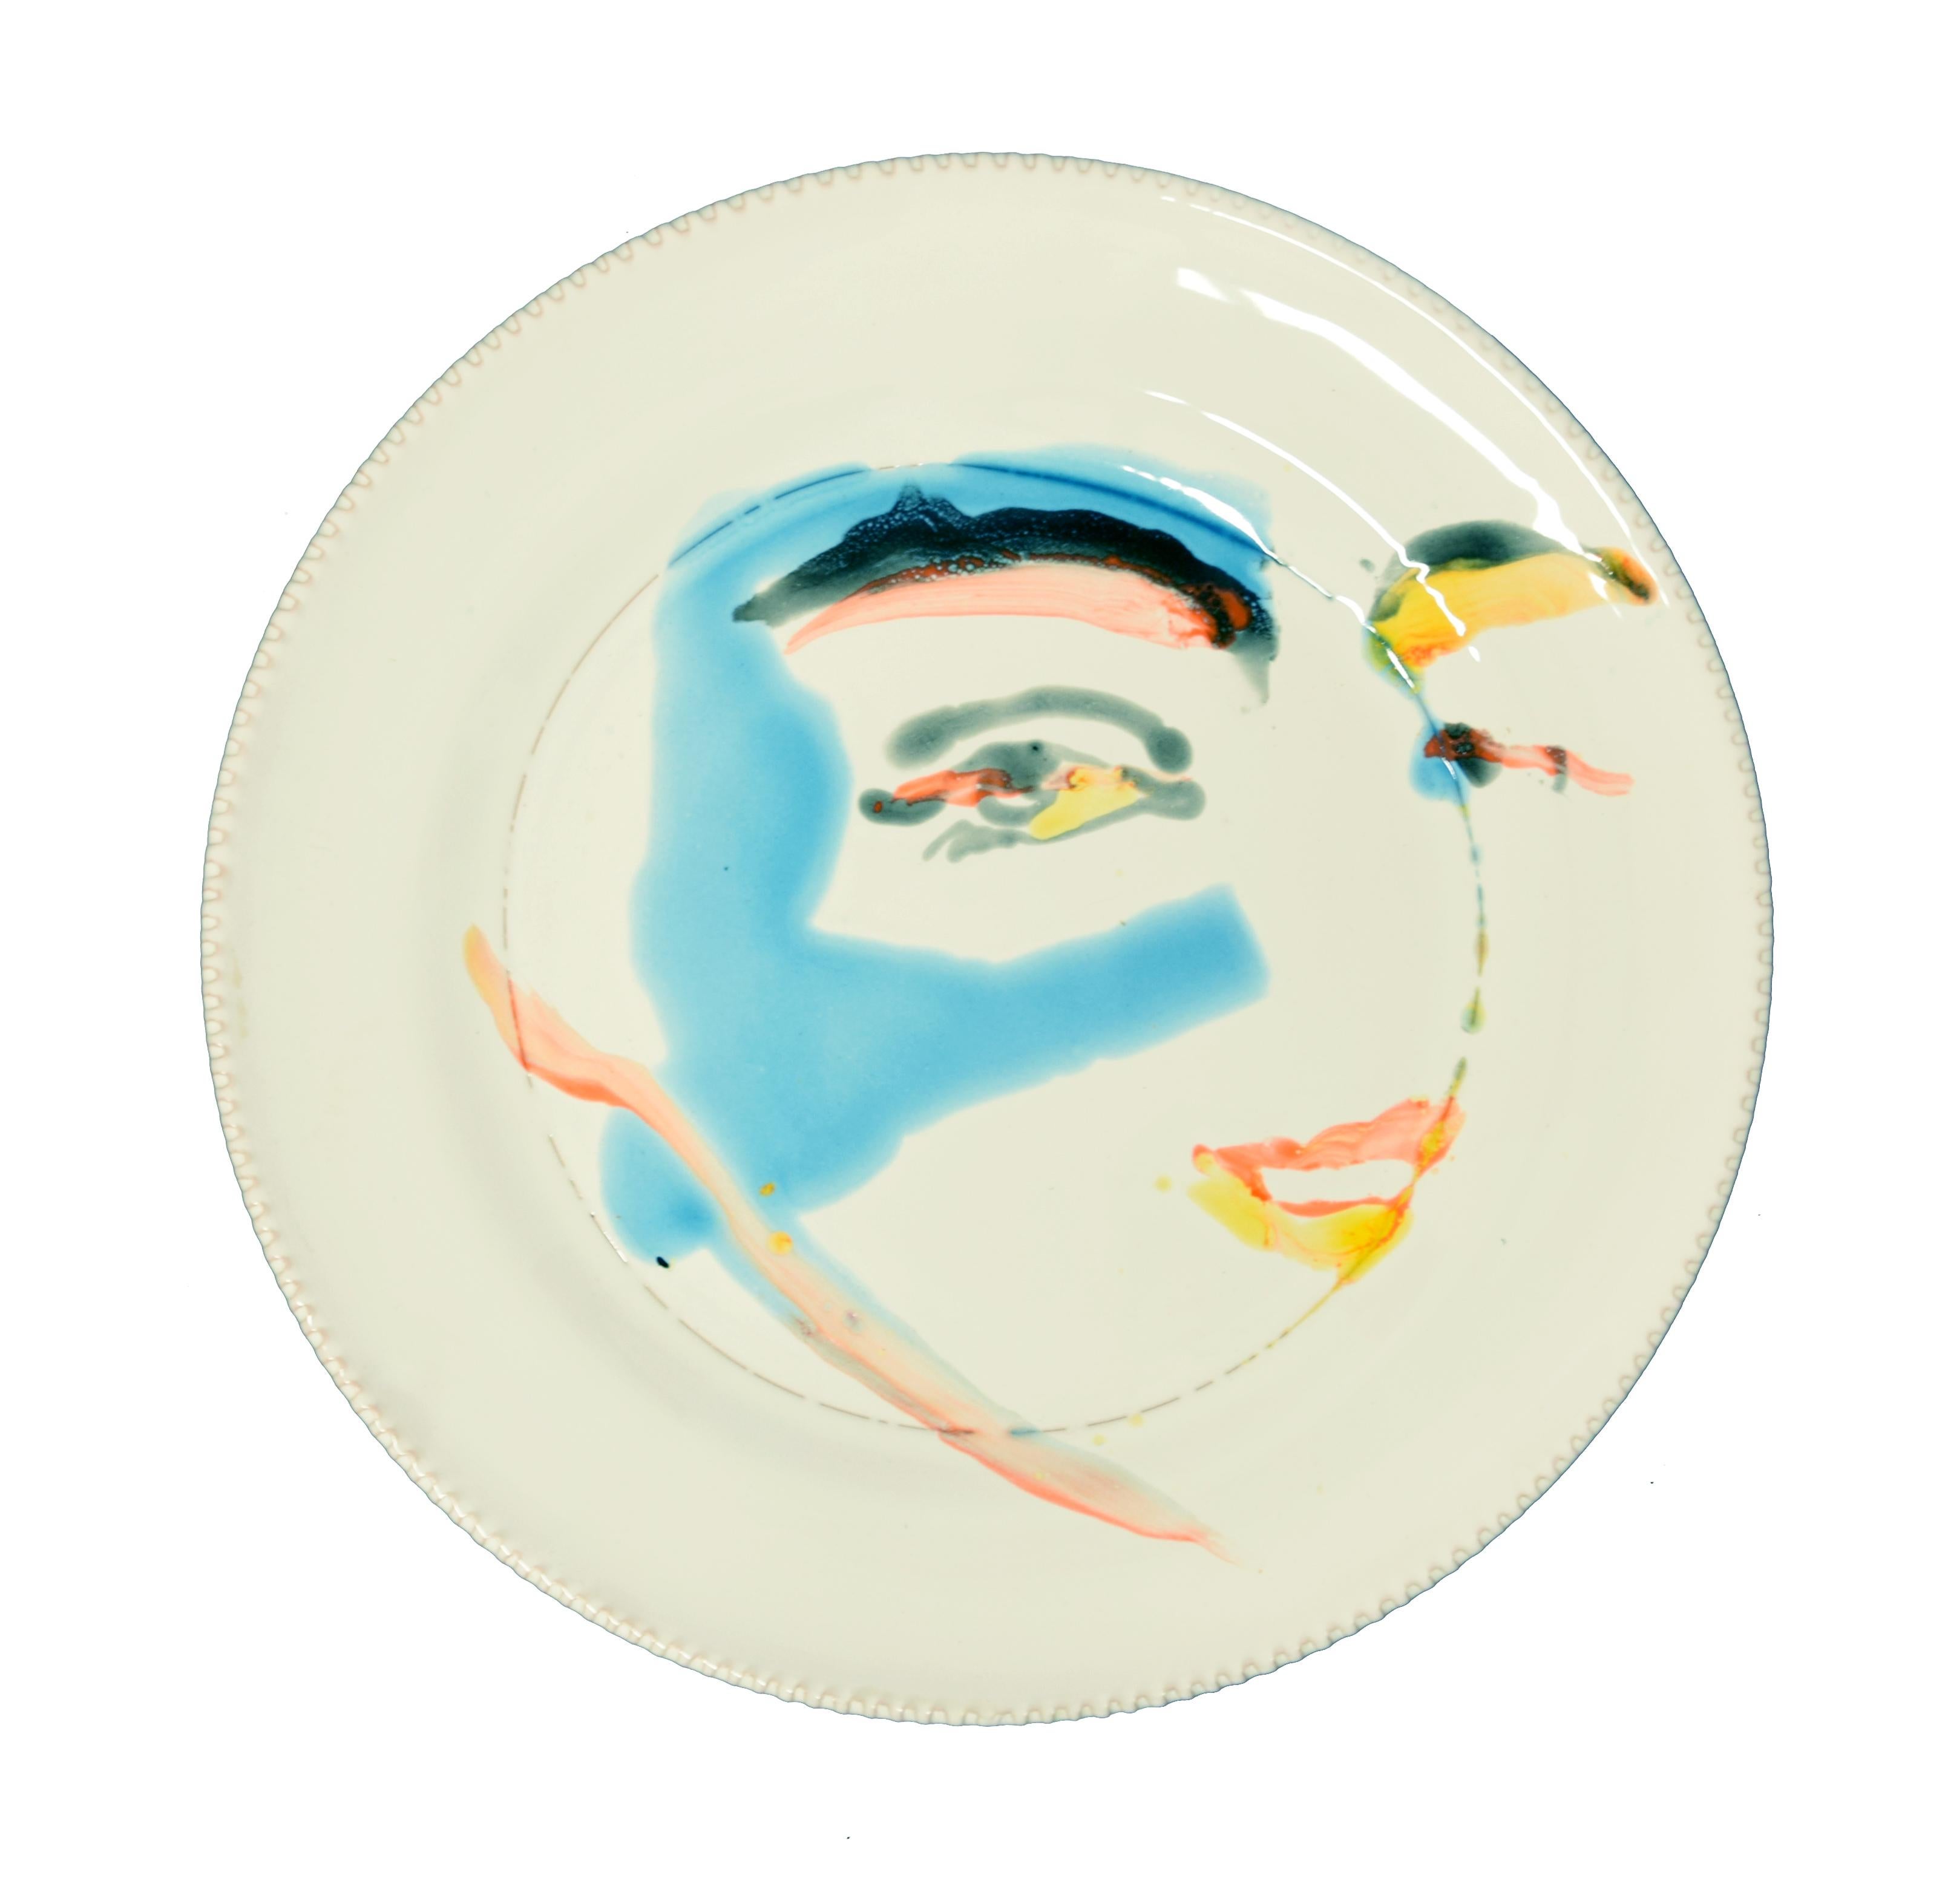 Eyes ist eine wunderschöne, handgefertigte, flache Keramikschale, die von der russischen Künstlerin Anastasia Kurakina im Jahr 2019 realisiert wurde. 

Auf der Rückseite in der Mitte der blaue Stempel 